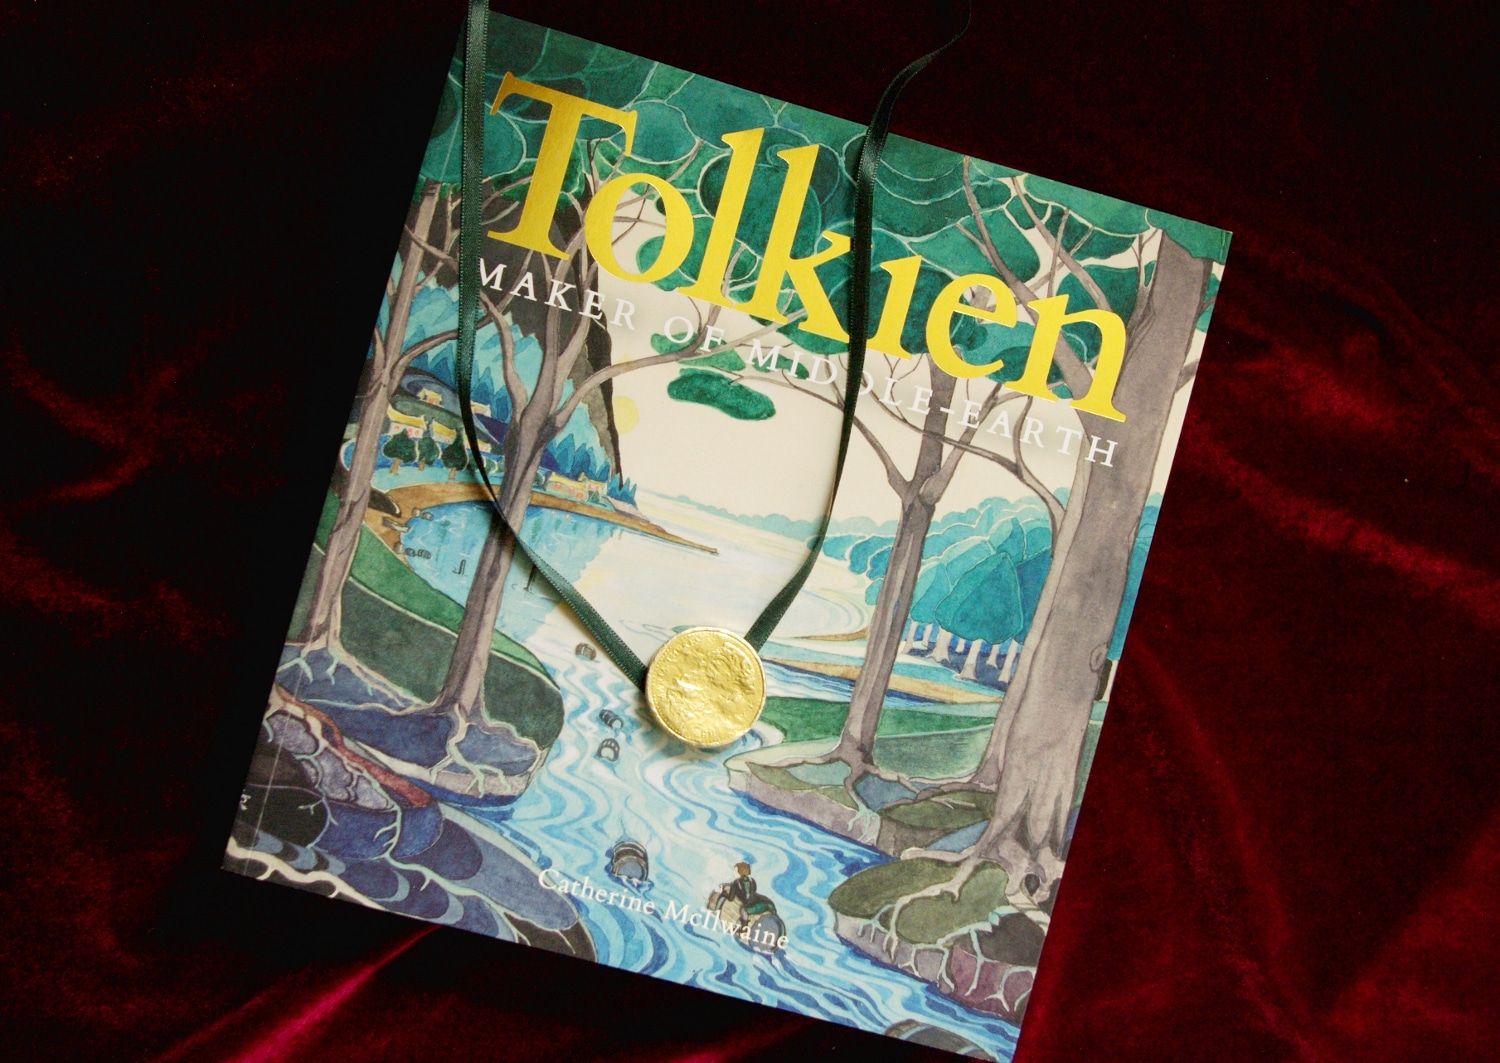 Tolkien Society Awards: Preisträger Maker of Middle-earth